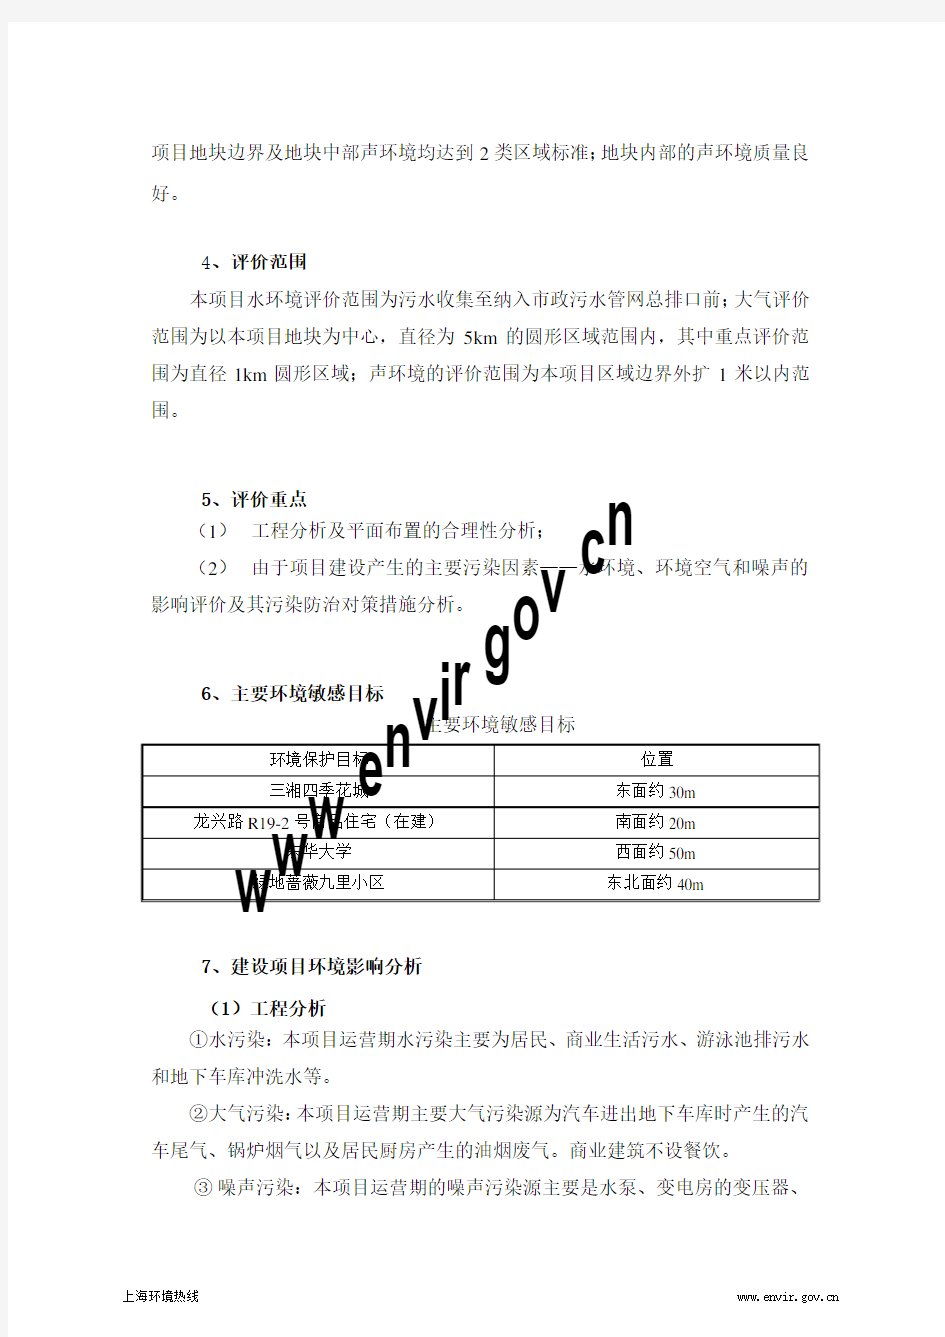 松江区龙兴路R19-1 地块商品房项目 环境影响报告书简本